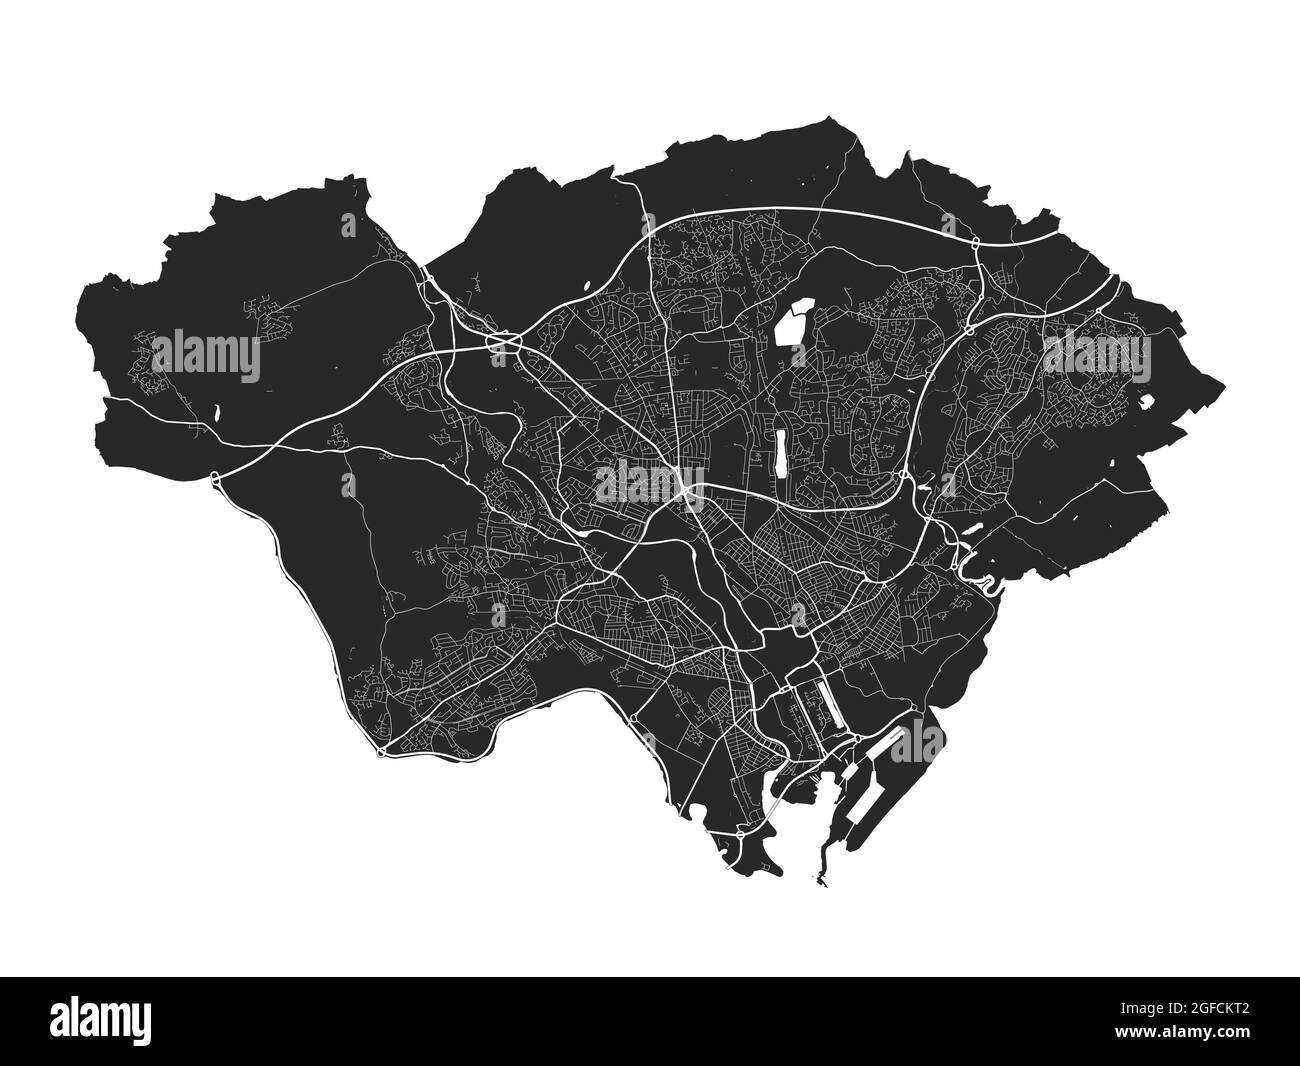 Cardiff-Karte. Detaillierte Vektorkarte des Verwaltungsgebiets der Stadt Cardiff. Blick auf das Stadtbild mit Postern und die Arie der Metropole. Schwarzes Land mit weißen Straßen, Straßen und Stock Vektor